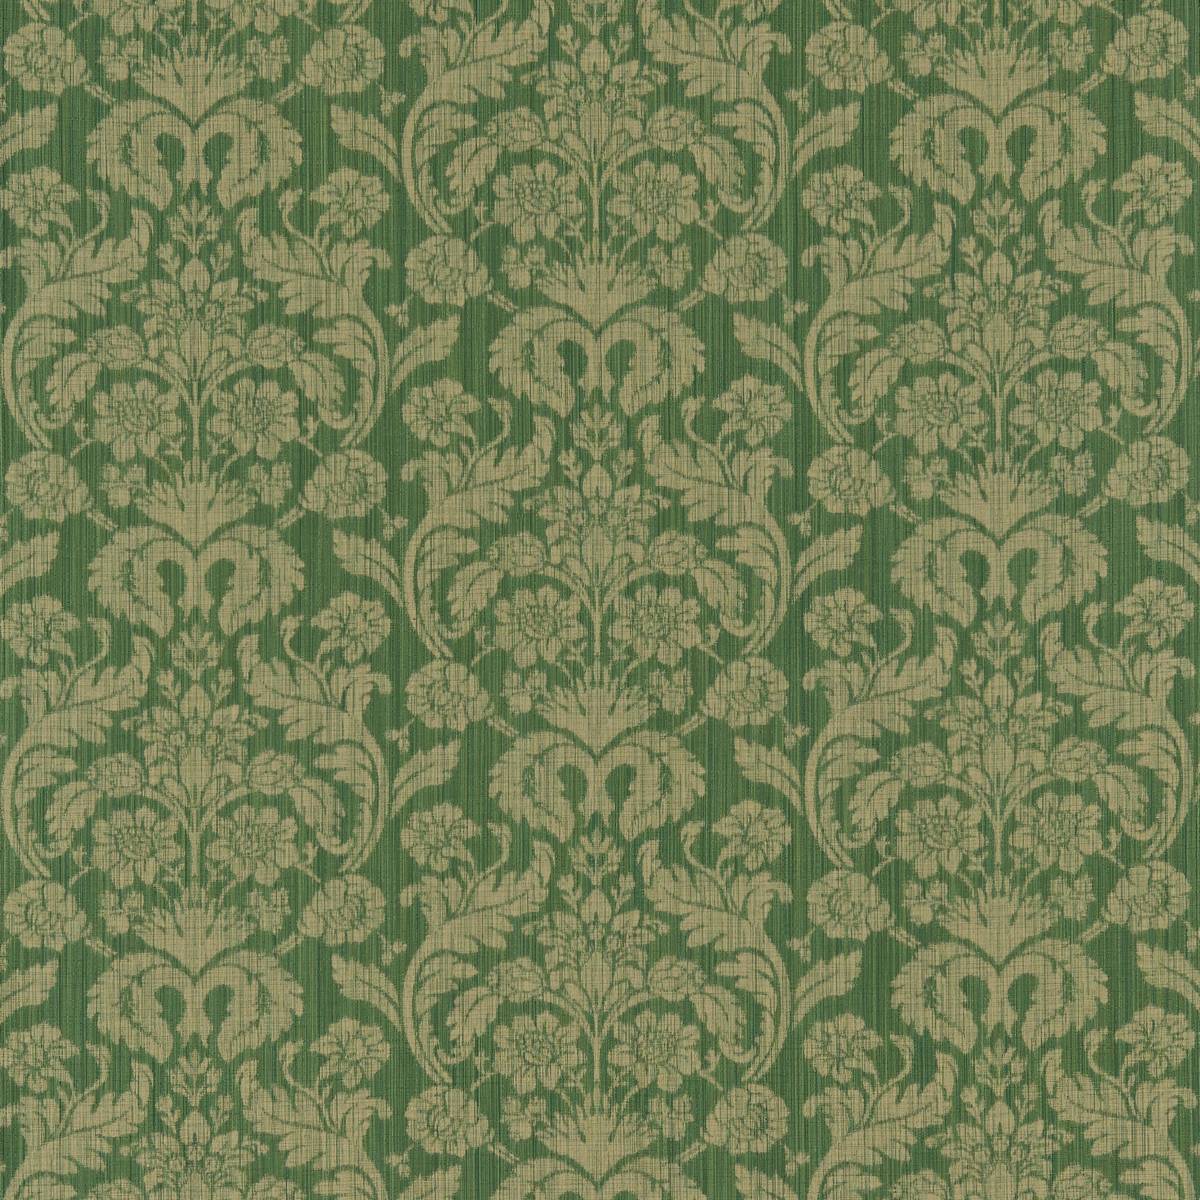 Damask Rose Emerald Fabric by Zoffany